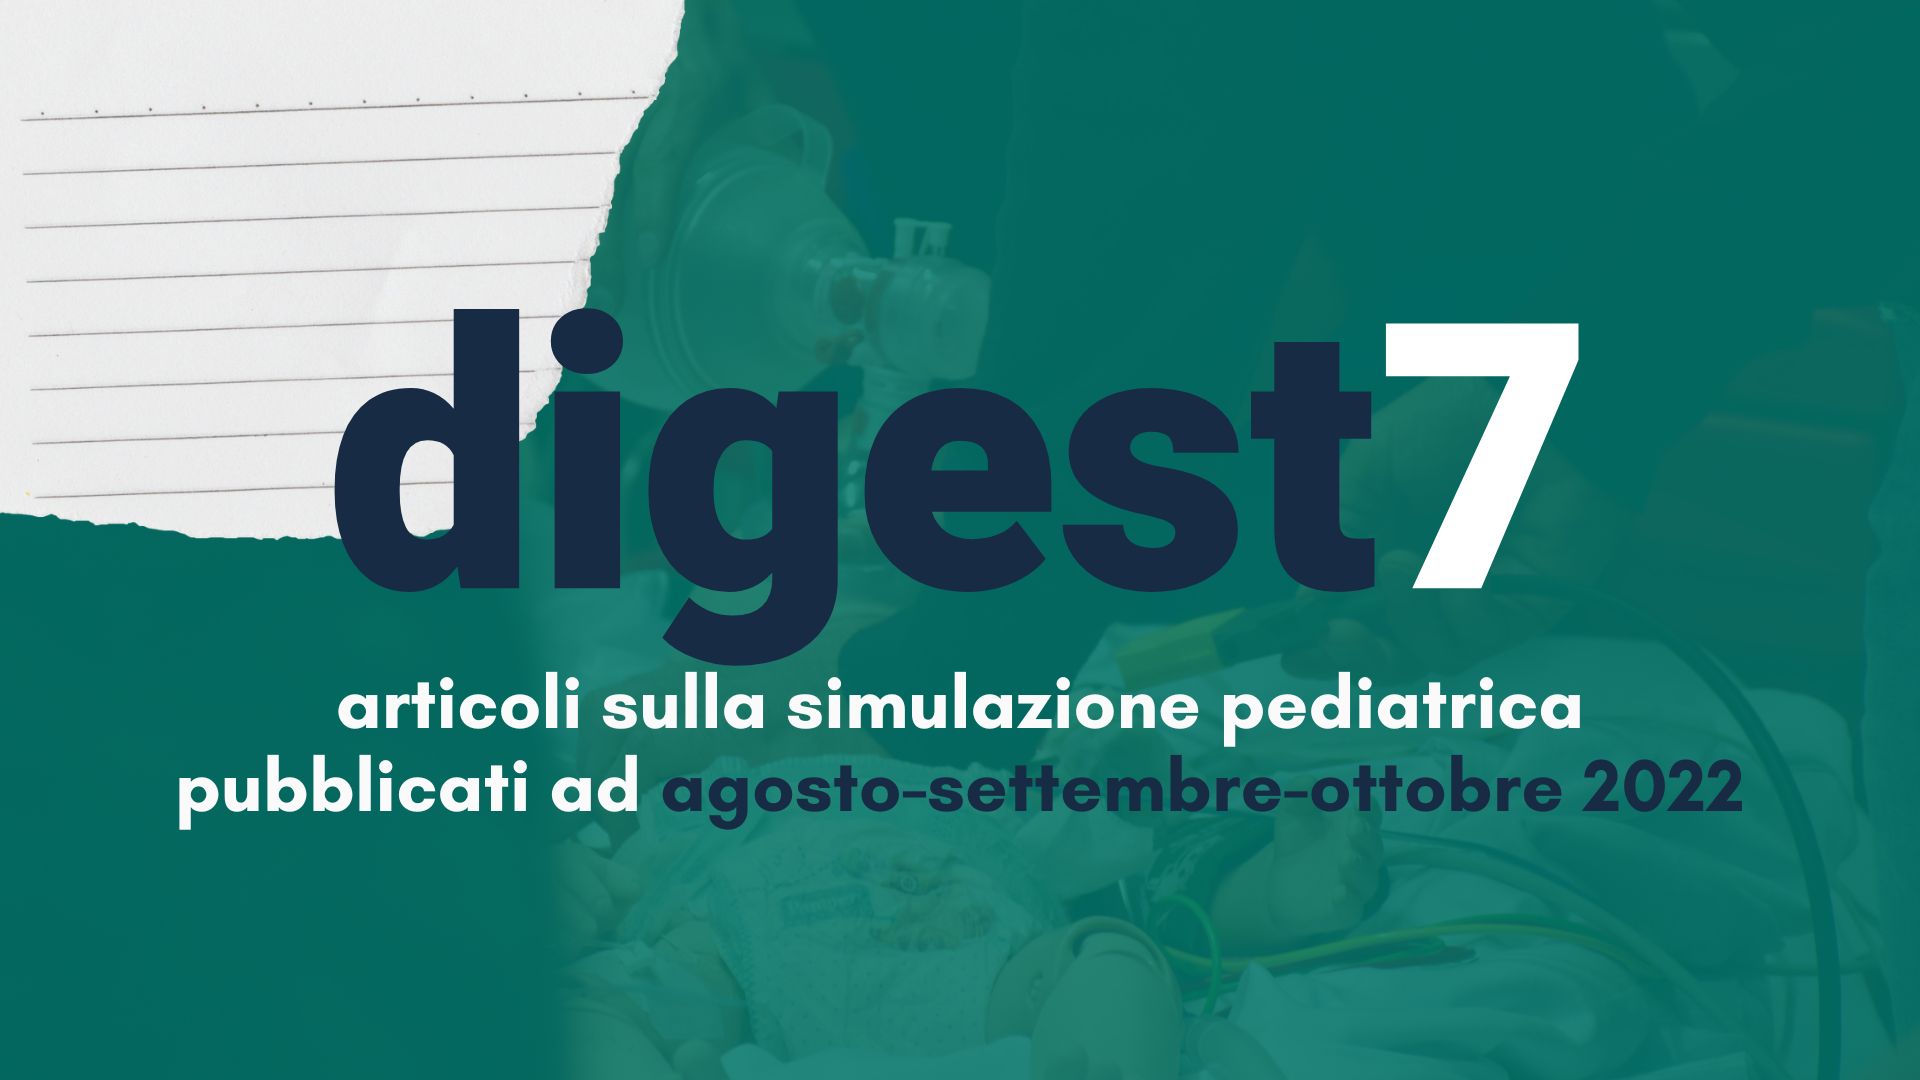 igest #04: Articoli sulla Simulazione Pediatrica pubblicati a marzo 2022